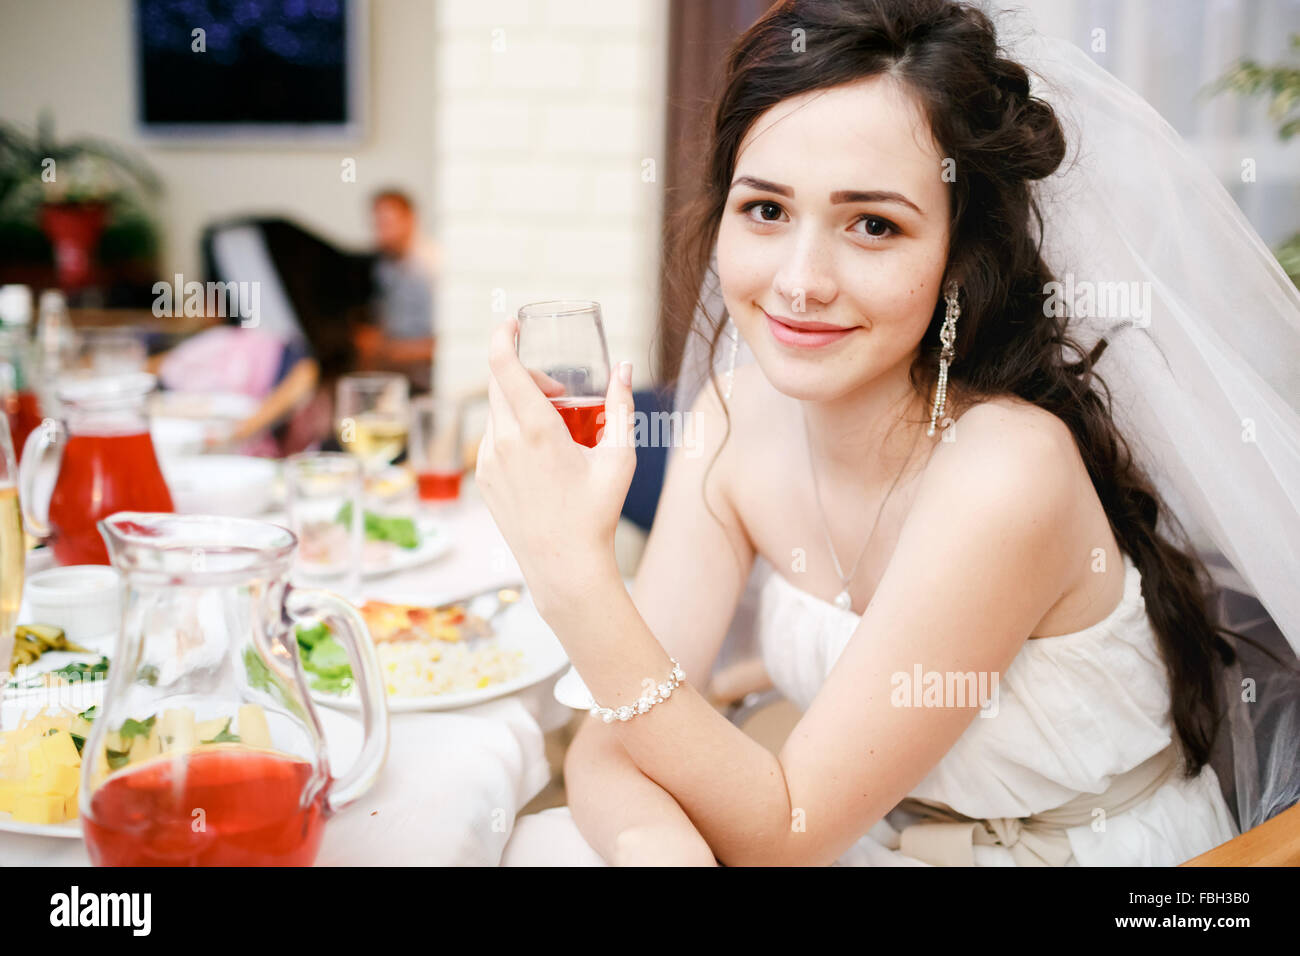 Attraktive schöne junge Braut im weißen Kleid sitzt am Tisch mit Glas Rotwein posieren, freundliche Augen, lächelte leicht. Feier, Hochzeit, Empfang, Essen steht auf dem Tisch. Stockfoto